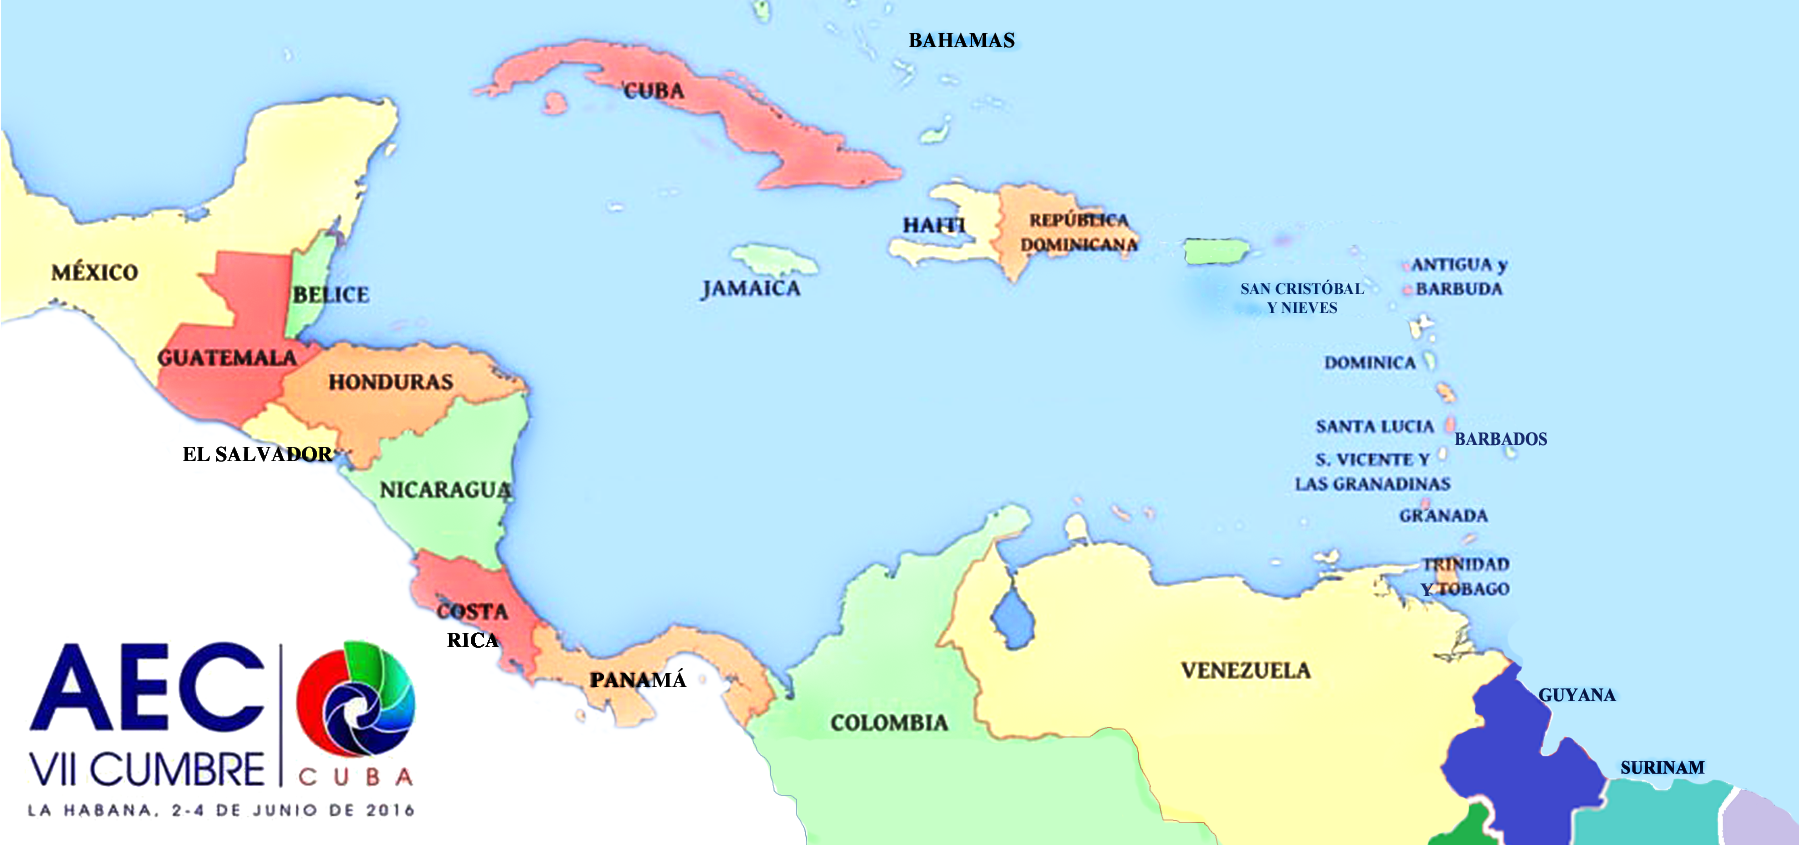 VII Cumbre Asociacion de Estados del Caribe Junio 2016VII Cumbre Asociacion de Estados del Caribe. La Habana. Cuba. Junio 2 al 4, 2016